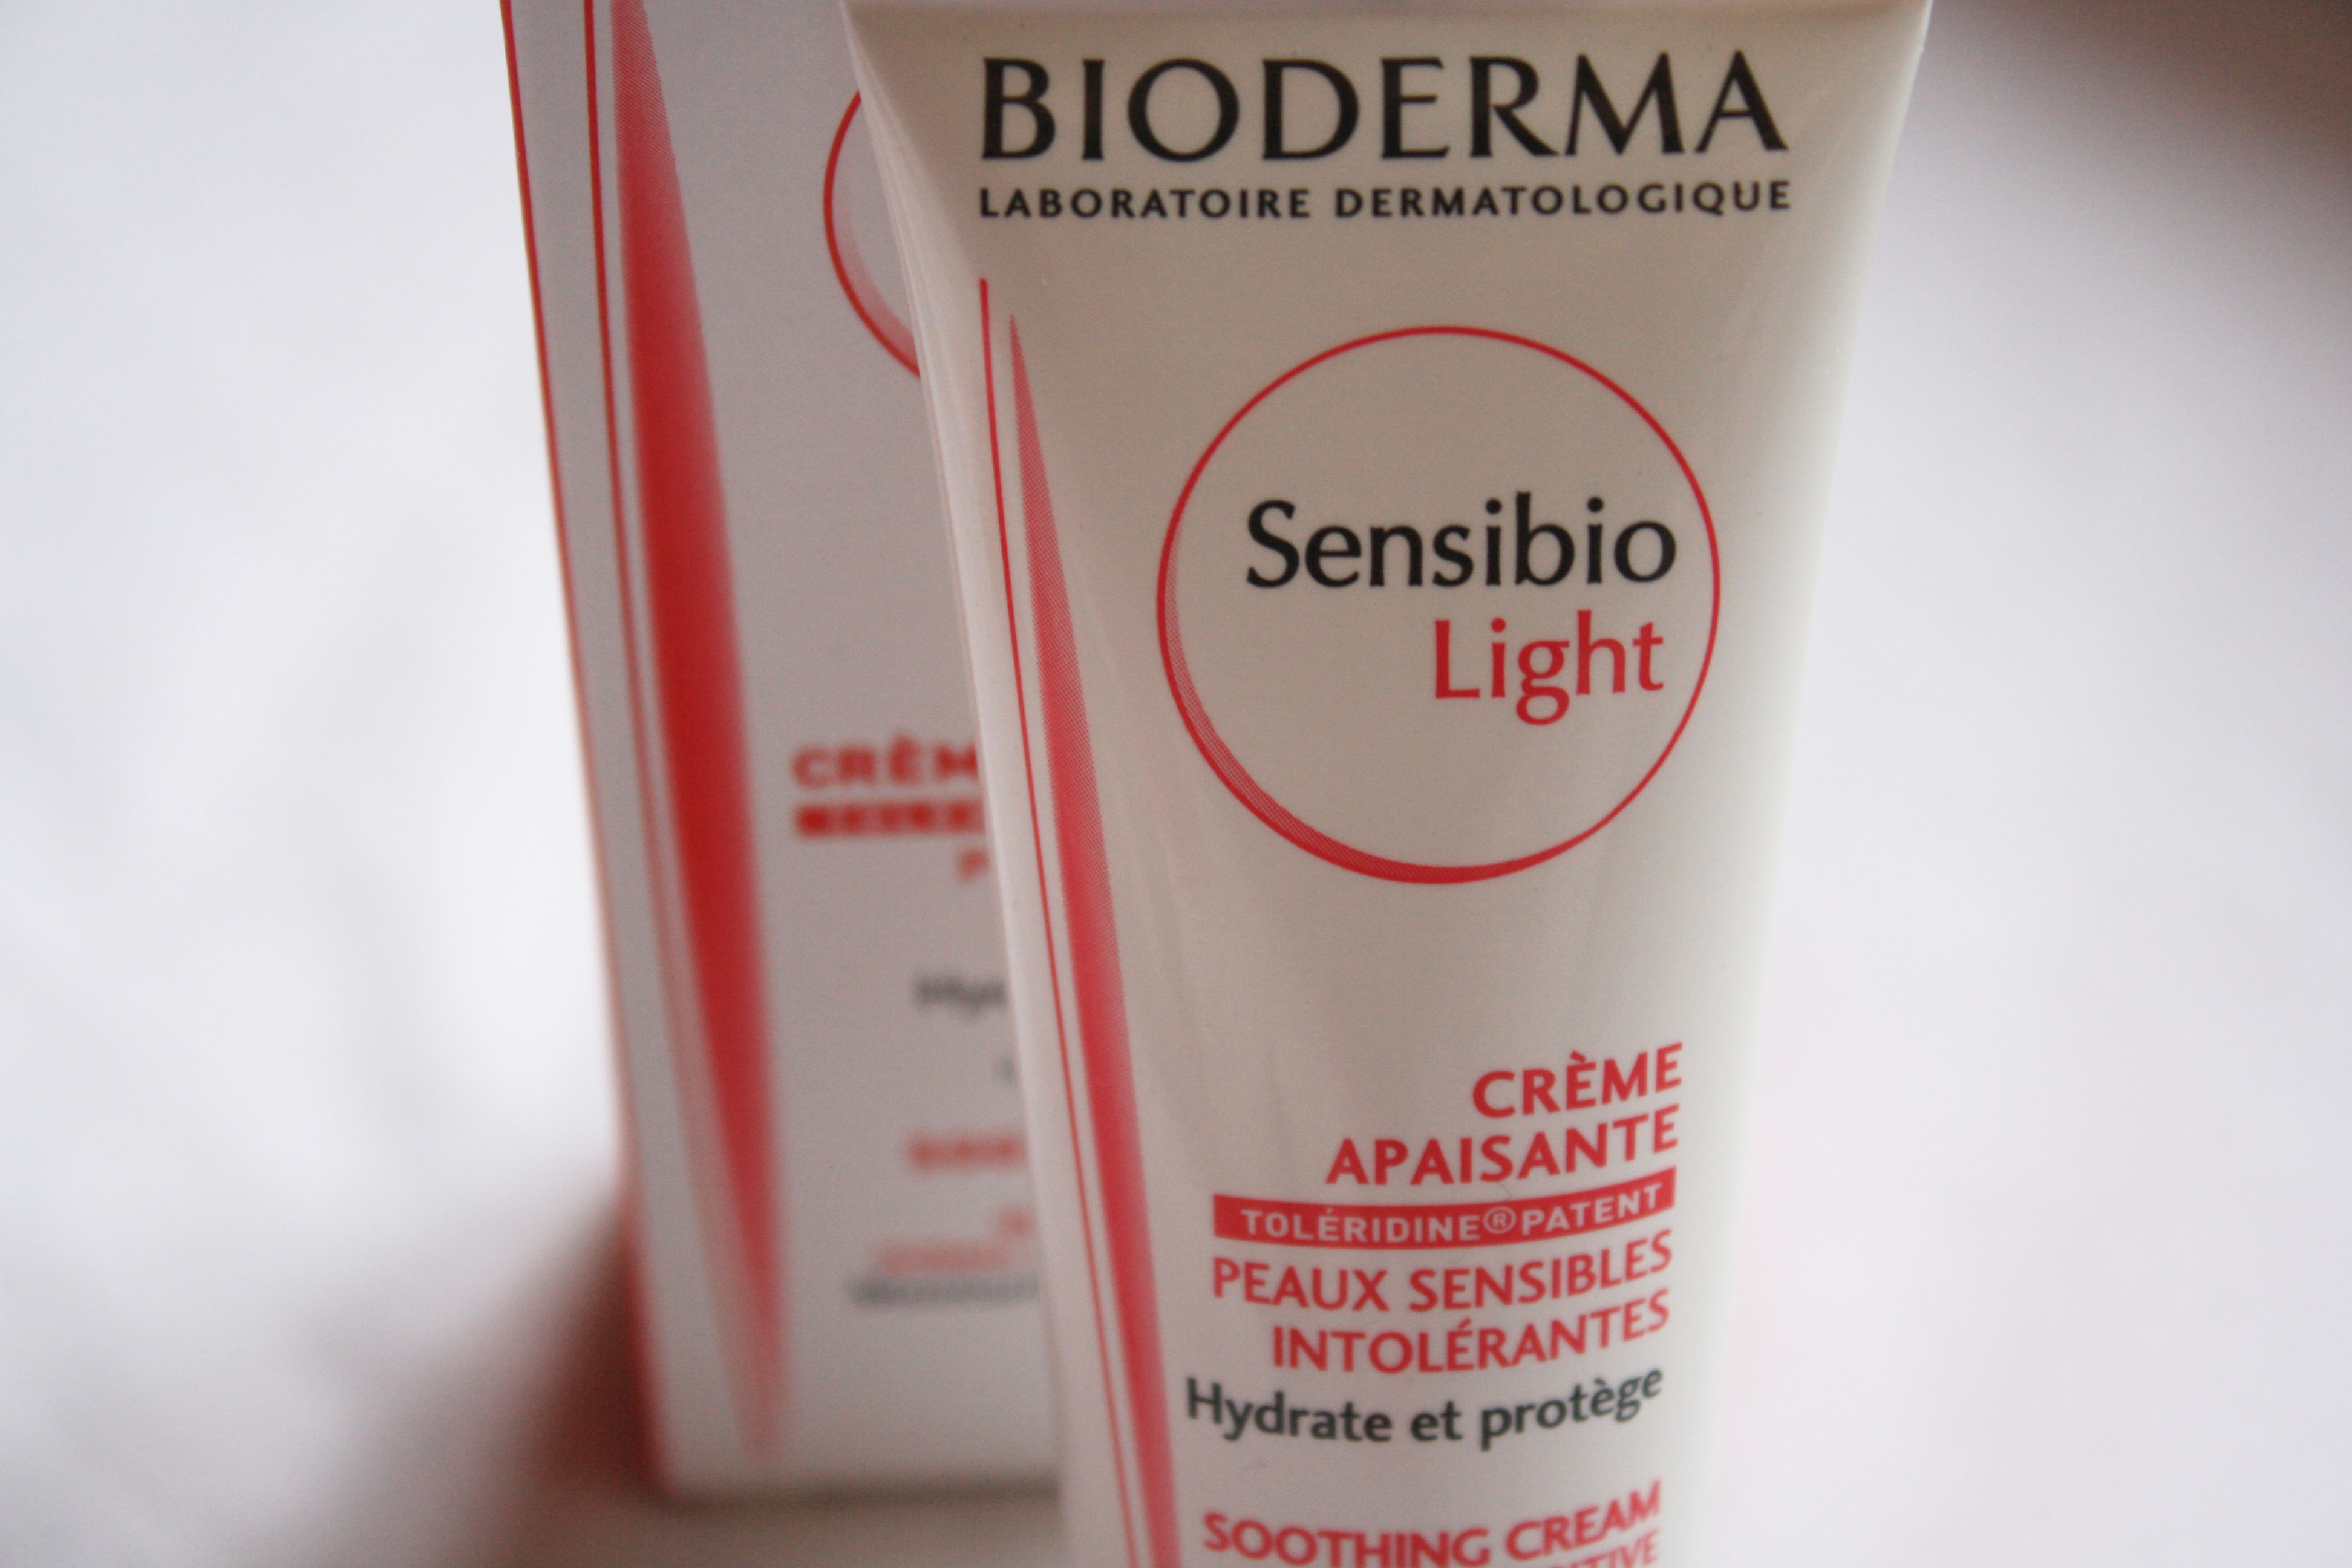 Сенсибио форте. Bioderma Sensibio крем. Sensibio Light от Bioderma. Bioderma Sensibio Light крем. Биодерма Сенсибио ДС + крем 40 мл.